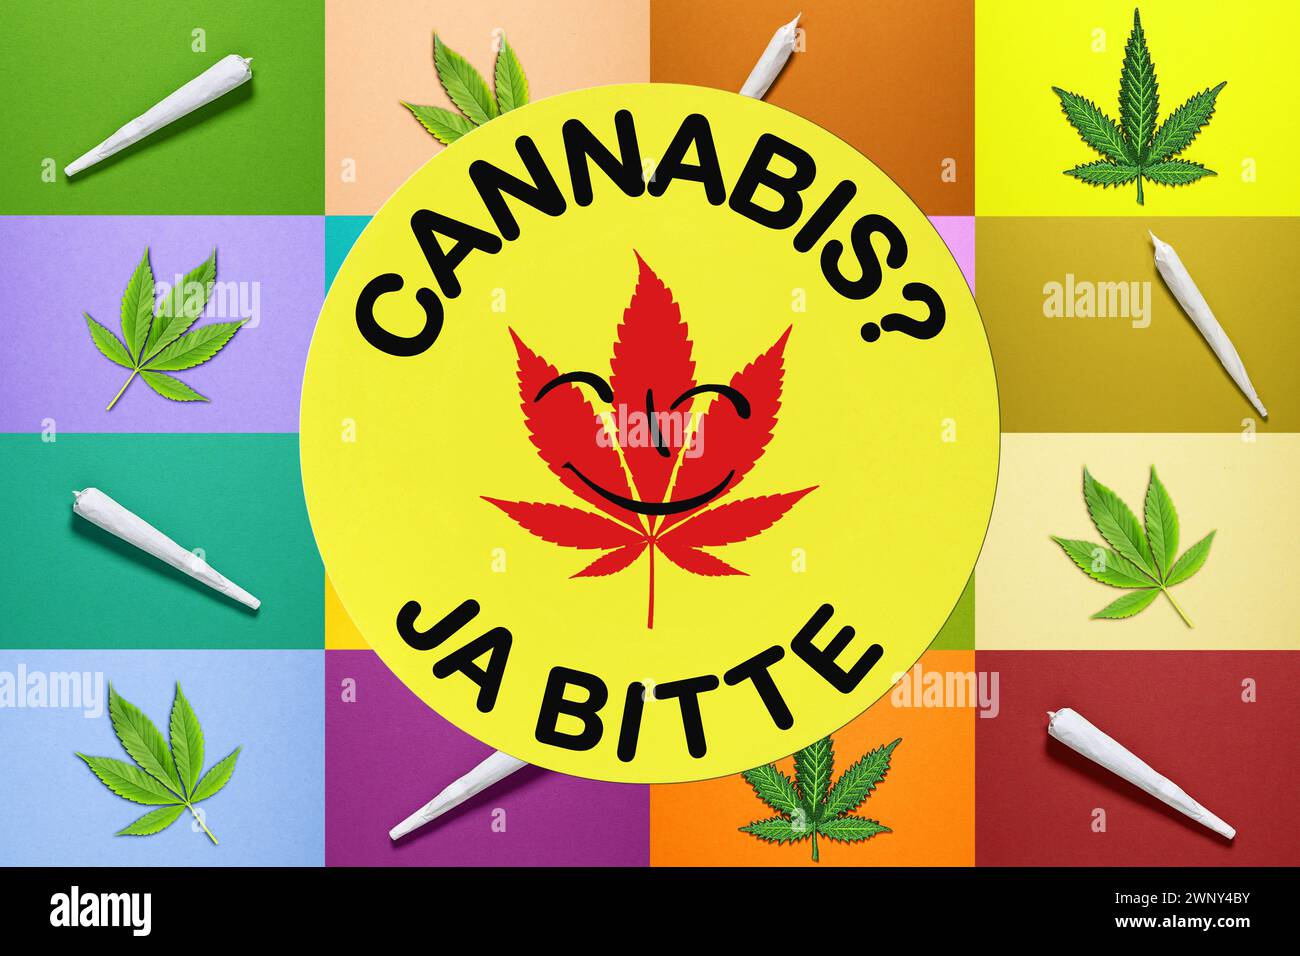 Adesivo con foglia di canapa e le parole Cannabis? Sì, prima di giunti e foglie di canapa, fotomontaggio Foto Stock